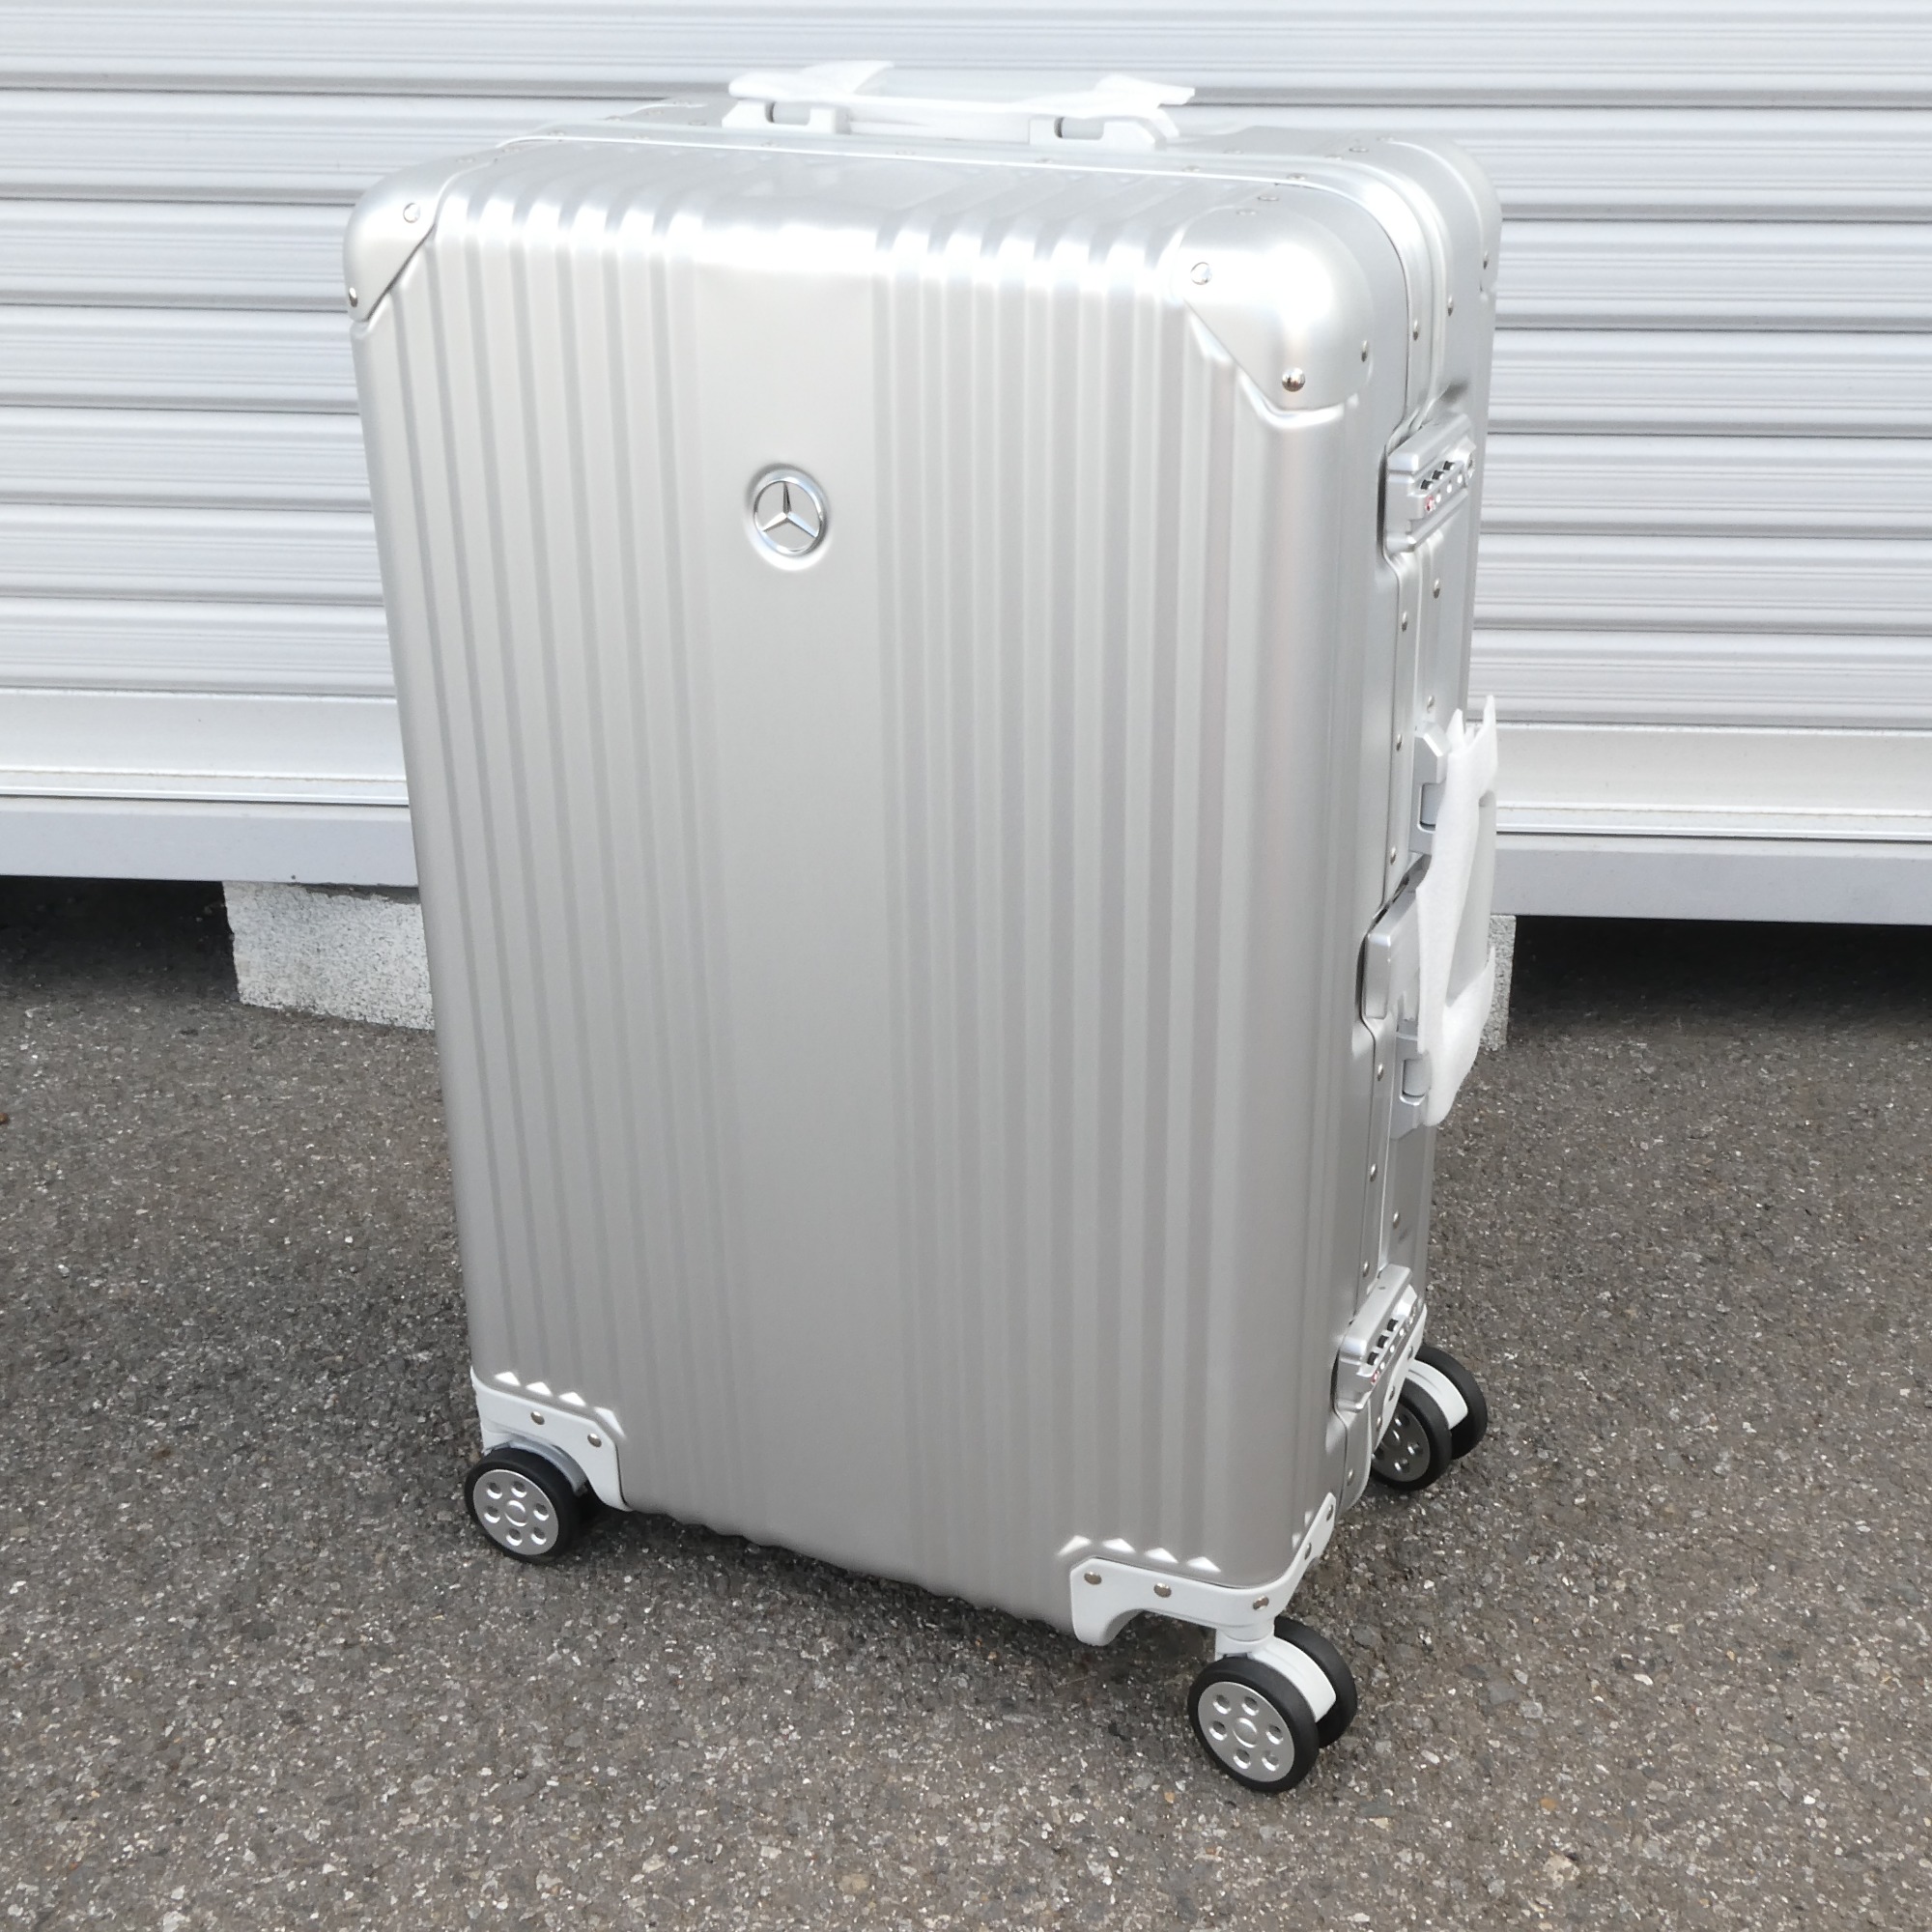 ベンツ スーツケース オリジナルアルミ 65L www.krzysztofbialy.com